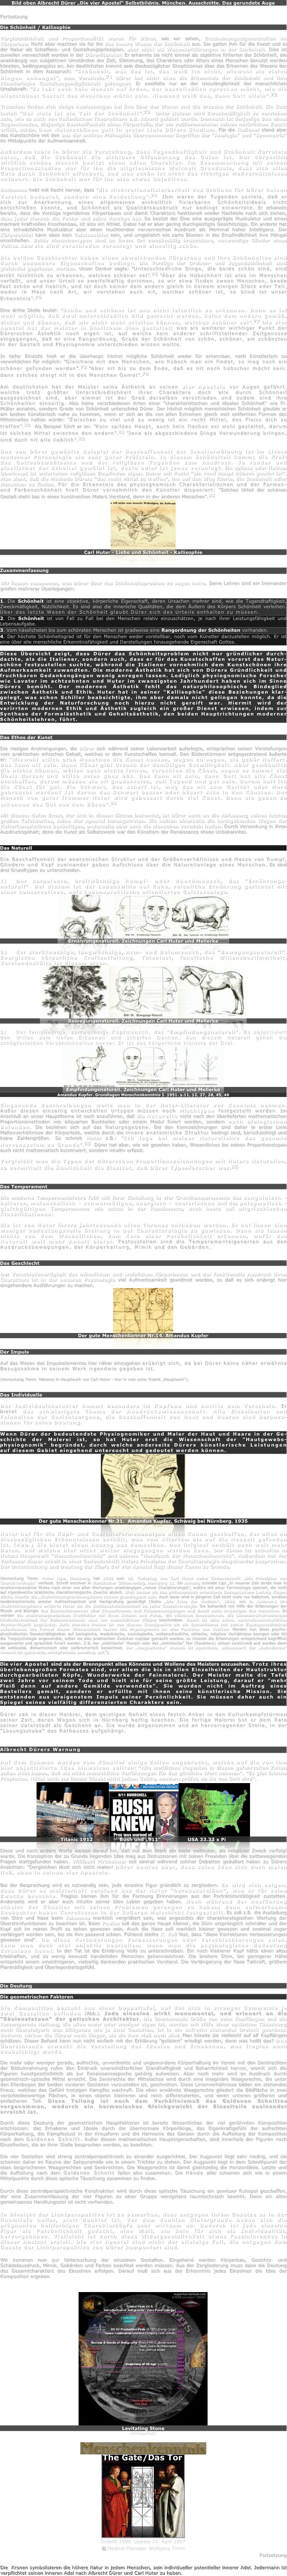 Bild oben Albrecht Dürer „Die vier Apostel“ Selbstbildnis. München. Ausschnitte. Das gerundete Auge

Fortsetzung

Die Schönheit / Kallisophie

Vergleichlichkeit und Proportionalität waren für Dürer, wie wir sahen, Erscheinungseigenschaften im Körperbau. Nicht aber machten sie für ihn das innere Wesen der Schönheit aus. Sie galten ihm für die Kunst und in der Natur als Schaffens- und Gestaltungsprinzipien, aber nicht als Wesenserklärungen in der Schönheit. Dies ist zuweilen verwechselt worden in der Dürerliteratur. Er erkannte sie nicht einmal als objektive Kriterien der Schönheit, die unabhängig von subjektiven Umständen der Zeit, Stimmung, des Charakters oder Alters eines Menschen benutzt werden könnten, bedingungslos an. Am deutlichsten kommt sein diesbezüglicher Skeptizismus über das Erkennen des Wesens der Schönheit in dem Ausspruch: "Schönheit, was das ist, das weiß ich nicht, wiewohl sie vielen Dingen anhanget", zum Vorschein.71 Dürer hat nicht etwa die Erkenntnis der Schönheit und ihre künstlerische Gestaltungsmöglichkeit geleugnet. Er zweifelte nur an der Unzulänglichkeit der menschlichen Urteilskraft: "Es lebt auch kein Mensch auf Erden, der beschließlich sprechen möcht, wie die allerschönst Gestalt des Menschen möcht sein. Niemand weiß das, dann Gott allein".72  

Trotzdem finden sich einige Auslassungen bei ihm über das Wesen und die Ursache der Schönheit. Ein Satz lautet: "Der Nutz ist ein Teil der Schönheit".73  Unter Nutzen wird Zweckmäßigkeit zu verstehen sein, wie es auch von italienischen Theoretikern z.B. Alberti gelehrt wurde. Demnach ist derjenige Bau eines Gegenstandes, diejenige Beschaffenheit eines Körperteils, der am vollkommensten seinen natürlichen Zweck erfüllt, schön. Dem Naturschönen galt in erster Linie Dürers Studium. Für die Italiener stand aber das Kunstschöne mit den aus der antiken Philosphie übernommenen Begriffen der "Analogia" und "Symmetria" im Mittelpunkte der Aufmerksamkeit.

Außerdem lebte in Dürer die Vorstellung, dass Tugendhaftigkeit und Schönheit Korrelate seien, daß die Schönheit die sichtbare Offenbarung des Guten ist. Der körperlich wirklich schöne Mensch besitzt einen edlen Charakter. Im Zusammenhang mit seinen Proportionsstudien war für ihn die altgriechische Weisheit Grundsatz, dass sich alles Gute durch Schönheit offenbart, und was schön ist nicht des richtigen Maßverhältnisses entbehrt. Die Schönheit war für ihn also etwas Objektives. 

Bachmann hebt mit Recht hervor, dass "die Nichtrationalisierbarkeit des Schönen für Dürer keinen Verzicht bedeutet, sondern eine Entdeckung".74  Ihm waren der Tugenden soviele, daß er sich zur Anerkennung eines allgemeinen einheitlich fixierbaren Schönheitsideals nicht entschließen konnte, und Schönheit als Qualitätsausdruck nur bedingt einwertete. Er erkannte bereits, dass die Vorzüge irgendeines Körperbaues und damit Charakters funktionell wieder Nachteile nach sich ziehen, dass jeder Mensch die Fehler und seine Vorzüge hat. So besitzt der Eine eine ausgeprägte Muskulatur und einen markant kraftvollen Knochenbau, ist also ein Athlet. Dabei hat er aber gering durchgeistigte Gesichtszüge. Ein anderer hat eine schwächliche Muskulatur aber einen leuchtenden nervenreichen Ausdruck als Merkmal hoher Intelligenz. Der Körperathlet kann eben kein Geistesathlet sein, und umgekehrt wie zarte Blumen in der Empfindlichkeit ihre Mängel einschließen. Beide Menschentypen sind an ihrem Ort zweckmäßig brauchbare, notwendige Glieder eines Volkes. Aber sie sind verschieden veranlagt und einseitig schön.

Die beiden Geschlechter haben einen abweichenden Körperbau und ihre Schönheiten sind durch besondere Eigenschaften bedingt. Die Vorzüge der Greisen- und Jugendschönheit sind gleichviel gepriesen worden. Unser Denker sagte: "Unterschiedliche Dinge, die beide schön sind, sind nicht leichtlich zu erkennen, welches schöner sei".75 "Aber die Hübschheit ist also im Menschen verfaßt, und unser Urteil so zweifelhaftig dorinnen, so wir etwa finden zween Menschen, beede fast schön und lieblich, und ist doch keiner dem andern gleich in keinem einigen Stück oder Teil, weder in Mass noch Art, wir verstehen auch nit, welcher schöner ist, so blind ist unser Erkenntnis".76 

Eine dritte Stelle lautet: "Schön und schöner ist uns nicht leichtlich zu erkennen. Dann es ist wohl möglich, daß zwei unterschiedlich Bild gemacht werden, keins dem andern gemäß, dicker und dünner, daß wir nicht wohl urteilen können, welches schöner sei".77 Die vier Apostel hat der Meister in ähnlichem Sinn gestaltet; was als weiterer wichtiger Punkt der Dürerschen Ästehtik noch eigen ist, auf welche kein anderer schriftstellender Zeitgenosse eingegangen, daß er eine Rangordnung, Grade der Schönheit von schön, schöner, am schönsten in der Gestalt und Physiognomie unterschieden wissen wollte.

In tiefer Einsicht hielt er die überhaupt höchst mögliche Schönheit weder für erkennbar, noch künstlerisch zu verwirklichen für möglich: "Gleichwie mit den Menschen, wie hübsch man ein findet, so mag noch ein schöner gefunden werden".78 "Aber nit bis zu dem Ende, daß es nit noch hübscher möcht sein. dann solches steigt nit in des Menschen Gemüt".79 

Am deutlichsten hat der Meister seine Ästhetik an seinen vier Aposteln vor Augen geführt, welche trotz größter Unterschiedlichkeit ihrer Charaktere doch alle durch Schönheit ausgezeichnet sind, aber einmal ist der Grad derselben verschieden und zudem sind ihre Schönheiten einseitig. Also keine verschiedenen Arten einer "charakteristischen und idealen Schönheit" wie Fr. Müller annahm, sondern Grade von Schönheit unterschied Dürer. Der höchst möglich menschlichen Schönheit glaubte er am besten künstlerisch nahe zu kommen, wenn er sich an die von allen Extremen gleich weit entfernten Formen des Mittelmaßes halten würde: "Zwischen zu viel und zu wenig ist ein recht Mittel, des Fleiss dich zu treffen".80  Als Beispiel führt er an: "Kein spitzes Haupt, auch kein flaches sei wohl gestaltet, darum ist solches Mittel zwischen den andern".81 "Jene als abgeschiedene Dinge Verwunderung bringen, sind doch nit alle lieblich".82 

Das von Dürer gewählte Beispiel der Beschaffenheit der Scheitelwölbung ist im Lichte moderner Phrenologie ein sehr guter Prüfstein. In diesem Schädelteil kommt die Kraft des Gottesbewußtseins und der religiösen Tugenden zum Ausdruck. Je runder und plastischer der Scheitel gewölbt ist, desto edler ist jenes veranlagt. Ein spitzes oder flaches Oberhaupt ist entartetem religiösen Empfinden eigen. Daher mit Recht "ein rund Haupt hübsch geacht ist". Man sieht, daß die Methode Dürers "das recht Mittel zu treffen", ihn auf den Weg führte, die Schönheit edler Menschen zu finden. Für die Erkenntnis des physiognomisch Charakteristischen und der Formen- und Farbenschönheit hielt Dürer vornehmlich den Künstler disponiert: "Solches Urteil der schönen Gestalt steht bas in eines kunstreichen Malers Verstand, denn in der anderen Menschen".83 
￼
Carl Huter - Liebe und Schönheit - Kallisophie


Zusammenfassung

Wir fassen zusammen, was Dürer über das Schönheitsproblem zu sagen hatte. Seine Lehren sind ein Ineinander greifen mehrerer Überlegungen:

1. Die Schönheit ist eine objektive, körperliche Eigenschaft, deren Ursachen mehrer sind, wie die Tugendhaftigkeit, Zweckmäßigkeit, Nützlichkeit. Es sind also die innerliche Qualitäten, die dem Äußern des Körpers Schönheit verleihen. Über das letzte Wesen der Schönheit glaubt Dürer sich des Urteils enthalten zu müssen.
2. Die Schönheit ist von Fall zu Fall bei den Menschen relativ einzuschätzen, je nach ihrer Leistungsfähigkeit und Lebensaufgabe.
3. Vom hässlichsten bis zum schönsten Menschen ist gradweise eine Rangordnung der Schönheiten vorhanden.
4. Der höchste Schönheitsgrad ist für den Menschen weder vorstellbar, noch vom Künstler darzustellen möglich. Er ist eine über alle menschliche Erkenntnisfähigkeit und Darstellungen hinausgehende Eigenschaft Gottes.

Diese Übersicht zeigt, dass Dürer das Schönheitsproblem nicht nur gründlicher durch-dachte, als die Italiener, sondern auch, dass er für das Kunstschaffen vorerst das Natur-schöne festzustellen suchte, während die Italiener vornehmlich dem Kunstschönen ihre Aufmerksamkeit zuwandten. Die moderne Ästhetik hat sich von Dürers Gründlichkeit und fruchtbaren Gedankengängen wenig anregen lassen. Lediglich physiognomische Forscher wie Lavater im achtzehnten und Huter im zwanzigsten Jahrhundert haben sich im Sinne Dürers bemüht. Der modernen Ästhetik fehlt das naturphilosophische Bindeglied zwischen Ästhetik und Ethik. Huter hat in seiner "Kallisophie" diese Beziehungen klar-gelegt, was schon Schiller beabsichtigte, ihm aber damals nicht gelingen konnte, da die Entwicklung der Naturforschung noch hierzu nicht gereift war. Hiermit wird der verirrten modernen Ethik und Ästhetik zugleich ein großer Dienst erwiesen, indem zur Synthese der Formalästhetik und Gehaltsästhetik, den beiden Hauptrichtungen moderner Schönheitslehren, führt.


Das Ethos der Kunst 

Die riesigen Anstrengungen, die Dürer sich während seiner Lebensarbeit auferlegte, entsprachen seinen Vorstellungen vom praktischen ethischen Gehalt, welches er dem Kunstschaffen beimaß. Den Bilderstürmern entgegentretend äußerte er: "Wiewohl etlich grob Menschen die Kunst hassen, wagen zu sagen, sie gebär Hoffart. Das kann nit sein. Dann Künst gibt Ursach der demütigen Gutwilligkeit. Aber gewöhnlich die nichts können, wöllen auch nichts lernen, verachten die Künst, sagen es kummt viel Übels darvan und etlich seien ganz bös. Das kann nit sein, dann Gott hat alle Künst beschaffen, darum müssen sie all gnadenreich, voll Tugend und gut sein. Darum halt ich die Künst für gut. Ein Schwert, das scharf ist, mag das nit zum Gericht oder Mord gebraucht werden? Ist darum das Schwert besser oder böser? Also in den Künsten. Der Mensch von guter frummer Natur wird gebessert durch viel Kunst. Dann sie geben zu erkennen das Gut aus dem Bösen".84 

Mit diesem tiefen Ernst, der sich in diesen Sätzen bekundet, ist Dürer auch an die Abfassung seines letzten großen Tafelwerkes, seine vier Apostel herangetreten. Sie sollten einerseits die hochgehenden Wogen der Kulturkampfstürme besänftigen, anderseits aber auch die Menschen veredeln helfen. Durch Versenkung in ihren Ausdrucksgehalt; denn die Kunst als Selbstzweck war den Künstlern der Renaissance etwas Unbekanntes.


Das Naturell

Die Beschaffenheit der anatomischen Struktur und der Größenverhältnisse und Masse von Rumpf, Gliedern und Kopf zueinander geben Aufschluss über die Naturellanlage eines Menschen. Es sind drei Grundtypen zu unterscheiden.

1)	Der korpulente, breitwüchsige Rumpf- oder Bauchmensch, das "Ernährungs-naturell". Bei diesem ist der Lebenswille auf Ruhe, reichliche Ernährung gerichtet mit einer konservativen, aufs Lebenspraktische orientierten Geistesanlage.
￼￼￼
Ernährungsnaturell. Zeichnungen Carl Huter und Mellerke

2)	der starkknochige, langwüchsige, Arm- und Beinmensch, das "Bewegungsnaturell". Energische körperliche Kraftentfaltung, Tatenlust, fanatische Willensbestimmtheit, Verstandeskälte ist diesem eigen.
￼￼￼
Bewegungsnaturell. Zeichnungen Carl Huter und Mellerke

3)	Der feingliedrige, zartwüchsige Kopfmensch, das "Empfindungsnaturell". Es objektiviert den Willen zum tiefen Erkennen und scharfen Denken. Aus diesem Naturell gehen die schöpferischen Persönlichkeiten hervor. Er ist das körperliche kleinste der Drei.
￼￼￼
Empfindungsnaturell. Zeichnungen Carl Huter und Mellerke
Amandus Kupfer. Grundlagen Menschenkenntnis I. 1951. s.11, 12, 27, 28, 45, 46

Eingehende Beschreibungen wolle man in der Huter-Literatur zur Kenntnis nehmen. Außer diesen einseitig entwickelten Urtypen müssen noch Mischtypen festgestellt werden. Im Anschluß an unser Hauptthema ist noch anzuführen, daß die Naturelle nicht nach den überlieferten mathematischen Proportionsmethoden wie aliquarten Buchteilen oder einem Modul fixiert werden, sondern nach biologischen Befunden. Sie beziehen sich auf das Naturgegebene. Bei den Kennzeichnungen sind daher in erster Linie Maßenverhältnisse der Körperteile, welche durch die innere anatomische Struktur bedingt sind, berücksichtigt und keine Zahlengrößen. So schrieb Huter z.B.: "Ich lege bei meiner Naturellehre das gesamte Nervensystem zu Grunde".85  Dürer hat aber, wie wir gesehen haben, Wesentliches bei seinen Proportionstypen auch nicht mathematisch konstruiert, sondern intuitiv erfasst.

Vergleicht man die Typen der Dürerschen Proportionszeichnungen mit Huters Naturellen, so vermittelt die Ähnlichkeit die Einsicht, daß Dürer Typenforscher war.86


Das Temperament

Die moderne Tempermentslehre fußt mit ihrer Einteilung in vier Grundtemperamente des sanguinisch - heiteren, melancholisch - schwermütigen, energisch - cholerischen und des phlegmatisch - gleichgültigen Temperaments wie schon in der Renaissance, noch heute auf altgriechischen Klassifikationen.

Sie ist von Huter ihrers jahrtausende alten Thrones enthoben worden. Er hat ihnen eine weniger bedeutungsvolle Stellung in der Charakterologie zu gewiesen. Denn sie lassen nichts von dem Wesentlichen, dem Kern einer Persönlichkeit erkennen, wofür das Naturell weit mehr Anhalt bietet. Festzustellen sind die Temperamenteigenarten aus den Ausdrucksbewegungen, der Körperhaltung, Mimik und den Gebärden.


Das Geschlecht

Der Verschiedenartigkeit des männlichen und weiblichen Körperbaues und der funktionelle Ausdruck ihres Charakters ist in der neueren Psychologie viel Aufmerksamkeit gewidmet worden, so daß es sich erübrigt hier eingehendere Ausführungen zu machen.
￼
Der gute Menschenkenner Nr.14. Amandus Kupfer


Der Impuls

Auf das Wesen des Impulselementes hier näher einzugehen erübrigt sich, da bei Dürer keine näher erwähnte Bezugsnahme in seinem Werk irgendwie gegeben ist.

(Anmerkung Timm: Näheres in Hauptwerk von Carl Huter - hier in web unter Rubrik „Hauptwerk“).


Das Individuelle

Der Individualcharakter kommt besonders im Kopfbau und Antlitz zum Vorschein. Er bietet das schwierigste Thema der Ausdruckswissenschaft. Alle Einzelheiten und Feinheiten der Gesichtsorgane, die Beschaffenheit von Haut und Haaren sind heranzu-ziehen für seine Deutung.

Wenn Dürer der bedeutendste Physiognomiker und Maler der Haut und Haare in der Ge-schichte der Malerei ist, so hat Huter erst die Wissenschaft der "Hautgewebs-physiognomik" begründet, durch welche anderseits Dürers künstlerische Leistungen auf diesem Gebiet eingehend untersucht und gedeutet werden können.
￼
Der gute Menschenkenner Nr.31.  Amandus Kupfer. Schwaig bei Nürnberg. 1935

Huter hat für die Kopf- und Gesichtsformenanalyse einen Kanon geschaffen, der alles an diesbezüglichen Erkenntnissen enthält, was vom Altertum bis auf die Neuzeit gefunden ist. (Abb.) Sie bietet einen Auszug aus demselben. Das Original enthält noch weit mehr Daten, auf welche hier nicht weiter eingegangen werden kann. Der Kanon ist enthalten in Huters Hauptwerk "Menschenkenntnis" und seinem "Handbuch der Menschenkenntnis". Außerdem hat der Verfasser dieser Arbeit in einer Gedenkschrift Huters Prinzipien der Charakterologie eingehender besprochen. Der Untersuchung und Deutung der Köpfe der vier Apostel liegt dieser Kanon zu Grunde. 

(Anmerkung Timm: Peter Lips, Hamburg, hat 1938 zum 25. Todestag von Carl Huter seine Gedenkschrift „Die Prinzipien der Charakterologie“ verfasst. Schrift erschien in Hansischer Gildenverlag, Hamburg 11. Im Anhang schreibt Lips „In neuerer Zeit strebt man in anerkennenswerter Weise nach einer von allen Wertungen unabhängigen „reinen Charakterologie“, welche mit einer Terminologie operiert, die nicht auf irgendwelche praktische charakterologische Zwecke abzielt. Weit besser als das philosophisch orientierte Bezugssystem Ludwig Klages dürfte hierfür die „Kraftrichtungsordnungslehre Huters grundlegend sein. Auch diese wird in jüngerer Zeit nicht mehr nur belächelt, sondern medizinischerseits ernster Aufmerksamkeit und Nachprüfung gewürdigt (Siehe „Die Krise der Medizin“, 1928, von B. Aschner.) Die Kraftrichtungslehre erklärte Huter als die Schlüsselwissenschaft zu jeder Charakterologie. Sie behandelt mit Hilfe der Erfahrungen der Physik und Biologie das Zustandekommen aller Körperformen und Körperbewegungen und damit auch derjenigen des Menschen. Es werden die elektromagnetischen Kraftfelder mit ihren Achsen und Polen, die odischen Emanationen, die Lebenskraftstrahlungen (Heliodastrahlen) der Zellzentrosomen usw. am menschlichen Körper beschrieben. Damit ist eine echte, naturwissenschaftliche Psycho-Physik begründet. Jede einzelne Person ist von diesem Standpunkte als ein Dynamismus mit seiner Eigengesetzlichkeit aufzufassen. Die Formel dieser Wissenschaft lautet: Die Physiognomie ist eine Funktion von Kräften. Werden nun diese psycho-physikalischen Gesetzmäßigkeiten auf biologische, medizinische, soziologische, weltanschauliche, ethische, religiöse Verhältnisse bezogen oder für die Tierpsychologie angewendet, sollen sie also praktischen Zwecken nutzbar gemacht werden, so müssen die Erfahrungen entsprechend begrifflich ausgewertet und sprachlich fixiert werden. Z.B. der „elektrische“ Mensch oder das „elektrische“ Tier (Raubtiere) wirken zerstörend und werden dann als antisozial, disharmonisch oder verbrecherisch bezeichnet; der „magnetische“ Mensch ist egoistisch, willenshart; der „heliodische“ Mensch ist geistreich, schöpferisch, sensibel, usf.“).

Die vier Apostel sind als der Brennpunkt alles Könnens und Wollens des Meisters anzusehen. Trotz ihres überlebensgroßen Formates sind, vor allem die bis in allen Einzelheiten der Hautstruktur durchgearbeiteten Köpfe, Wunderwerke der Feinmalerei. Der Meister malte die Tafel zwei Jahre vor seinem Tode und hielt sie für seine größte Leistung, darauf er "mehr Fleiß denn auf andere Gemälde verwendete". Sie wurden nicht im Auftrag eines Bestellers gemalt, sondern er erfüllte mit ihnen seine künstlerische Mission. Sie entstanden aus ureigenstem Impuls seiner Persönlichkeit. Sie müssen daher auch ein Spiegel seines vielfältig differenzierten Charakters sein.

Dürer sah in dieser Malerei, dem geistigen Gehalt einen festen Anker in den Kulturkampfstürmen seiner Zeit, deren Wogen sich in Nürnberg heftig brachen. Die fertige Malerei bot er dem Rate seiner Vaterstadt als Geschenk an. Sie wurde angenommen und an hervorragender Stelle, in der "Losungsstube" des Rathauses aufgehängt.

 
Albrecht Dürers Warnung

Auf dem Rahmen wurden vom Künstler einige Zeilen angebracht, welche auf die von ihm hier objektivierte Idee hinweisen sollten: "Alle weltlichen Regenten in diesen gefahrvollen Zeiten sollen Acht haben, daß sie nicht menschliche Verführungen für das göttliche Wort nehmen". "Es gibt falsche Propheten. Hütet euch vor ihnen! Glaubt nicht jedem Geiste, sondern prüfet, ob sie von Gott sind".
￼￼￼
Titanic 1912                 Bush und „911“                 USA 33.33 x Pi

Diese und noch andere Worte weisen darauf hin, daß mit dem Werk ein mehr weltlicher, als religiöser Zweck verfolgt wurde. Die Konzeption der zu Grunde liegenden Idee mag aus Diskussionen mit seinen Freunden über die zeitbewegenden Fragen stattgefunden haben. Willibald Pirkheimer soll einmal während solcher Debatten geäußert haben zu Dürers Ansichten: "Dergleichen lässt sich nicht malen! Dürer bewies aber, dass seine Idee sich doch malen ließ, eben in seinen vier Aposteln.

Bei der Besprechung wird es notwendig sein, jede einzelne Figur gründlich zu zergliedern. Es wird sich zeigen, dass Dürer es meisterhaft verstand aus der Natur "herauszureißen", was er für seine Zwecke brauchte. Fraglos kamen ihm für die Formung Erinnerungen aus der Porträtistentätigkeit zustatten. Anderseits wird er aber auch intuitiv seiner Idee Leben gegeben haben. Noch während der Ausführung scheint der Künstler mit seinen Problemen gerungen zu haben; denn aufmerksame Beobachter haben Korrekturen in der äußeren Malschicht festgestellt. Es soll z.B. die Ausladung von Stirn und Nase beim Johannes merklich vergrößert sein, was angesichts der charakterologischen Wertung der Oberstirnfunktionen zu beachten ist. Beim Paulus soll das ganze Haupt kleiner, die Stirn ursprünglich schmäler und der Kopf soll im reinen Profil zu sehen gewesen sein. Auch die Nase soll merklich kleiner gewesen und zweimal sogar verlängert worden sein, bis sie ihm passend schien. Fühlend stellte K. Voll fest, dass "diese Korrekturen Verbesserungen gewesen sind". Ob diese Veränderungen Verbesserungen oder Verschlechterungen seien, kann man doch erst objektiv beurteilen, wenn man die psychologische Bedeutung derselben kennt. In der Tat ist die Erklärung Volls zu unterschreiben. Ein noch kleinerer Kopf hätte einen allzu triebhaften, und zu wenig bewusst handelnden Menschen gekennzeichnet. Die breitere Stirn, bei geringerer Höhe entspricht einem umsichtigeren, vielseitig denkenden praktischen Verstand. Die Verlängerung der Nase Tatkraft, größere Planmäßigkeit und Überlegenheitsgefühl.


Die Deutung

Die geometrischen Faktoren

Die Komposition besteht aus einer Doppeltafel, auf der sich in strenger Symmetrie je zwei Gestalten befinden (Abb.). Jede einzelne wirkt monumental, und erinnert an die "Säulenstatuen" der gotischen Architektur. Die übernormale Größe von zehn Kopflängen und die kerzengerade Haltung, die allen mehr oder weniger eigen ist, werden mit Hilfe einer optischen Täuschung noch übersteigert: Das Bildganze wie je zwei Gestalten, ist in ein aufrecht stehendes Dreieck geordnet. Dadurch wirken die Körper noch länger, als sie dem Maß nach sind. Man könnte sie vielleicht auf elf Kopflängen schätzen. Dieser Befund kann nun nicht einfach mit der Erklärung "gotisiert" erledigt werden; denn was heißt das? Das Überschlanke erweckt die Vorstellung des Idealen und Erhabenen, was fraglos auch beabsichtigt wurde.

Die mehr oder weniger gerade, aufrechte, unverdrehte und ungewundene Körperhaltung im Verein mit den Senkrechten der Bildumrahmung rufen den Eindruck unerschütterlicher Standhaftigkeit und Beharrlichkeit hervor, womit sich die Figuren kunstgeschichtlich als zur Renaissanceepoche gehörig aufweisen. Aber noch mehr wird an Ausdruck durch geometrisch-optische Mittel erreicht. Die Senkrechte der Mittelachse wird durch eine imaginäre Waagerechte, die unter den Ellenbogen der beiden vorderen Gestalten vorzustellen ist, geschnitten. Diese Linienverhältnisse bilden ein stehendes Kreuz; welches das Gefühl trotzigen Kampfes wachruft. Die eben erwähnte Waagerechte gliedert die Bildfläche in zwei verschiedenwertige Flächen, in einen oberen kleineren und reich differenzierten, und einen unteren größeren und einfacheren Teil. Diese Teilung ist nach dem Verhältnismaß des Goldenen Schnittes vorgenommen, wodurch ein harmonisches Gleichgewicht der Einzelteile zueinander erreicht ist.

Durch diese Deutung der geometrischen Hauptfaktoren ist bereits Wesentliches der viel gerühmten Komposition erschlossen: das Erhabene und Ideale durch die übernormale Körperlänge, das Eigenkraftgefühl der aufrechten Körperhaltung, die Kampfeslust in der Kreuzform und die Harmonie des Ganzen durch die Aufteilung der Komposition nach dem Goldenen Schnitt. Außer diesen mathematischen Haupteigenschaften, sind innerhalb der Figuren noch Einzelheiten, die an ihrer Stelle besprochen werden, zu beachten.

Die vier Gestalten sind streng zentralperspektivisch zu einander ausgerichtet. Der Augpunkt liegt sehr niedrig, und sie scheinen daher im Raume der Sehpyramide wie in einem Trichter zu stehen. Der Augpunkt liegt in dem Schnittpunkt der eben besprochenen Waagerechten und Senkrechten. Die Waagerechte ist damit gleichzeitig die Horizontlinie. Letzte und die Aufteilung nach dem Goldenen Schnitt fallen also zusammen. Die Hände aller scheinen sich wie in einem Mittelpunkte durch diese optische Täuschung zusammen zu finden.

Durch diese zentralperspektivische Konstruktion wird durch diese optische Täuschung ein gewisser Ruhepol geschaffen, der eine Zusammenfassung der vier Figuren zu einer Gruppe wenigstens raumtechnisch bewirkt. Denn ein allen gemeinsames Handlungsziel ist nicht vorhanden.

In Hinsicht der Lichtperspektive ist zu bemerken, dass entgegen ihrem Gesetze es in der Raumtiefe heller, statt dunkler ist. Vor dem dunklen Hintergrunde heben sich die prägnanten hellfarbigen Charakterköpfe sehr wirksam ab. Dadurch ist jede einzelne Figur als Persönlichkeit gedacht, eine Welt, ein Sein für sich als Individualität, hervorgehoben. Vielleicht ist durch diese Widergesetzlichkeit etwas Faszinierendes in dieser Absicht erzielt. Die vier Apostel sind nicht der alleinige Fall, die entgegen dem Gesetz der Lichtperspektive von Dürer komponiert sind.

Wir kommen nun zur Untersuchung der einzelnen Gestalten. Eingehend werden Körperbau, Gesichts- und Schädelausdruck, Mimik, Gebärden und Farben beachtet werden müssen. Aus der Zergliederung muss dann die Deutung des Gesamtcharakters des Einzelnen erfolgen. Darauf muß sich aus der Erkenntnis jedes Einzelnen die Idee der Komposition ergeben.


￼
Levitating Stone
(Hinzugefügt)
￼
￼
Erstellt 1999. Update 21. April 2007
© Medical-Manager Wolfgang Timm
Fortsetzung

Die  Kronen symbolisieren die höhere Natur in jedem Menschen, sein individueller potentieller innerer Adel. Jedermann ist verpflichtet seinen inneren Adel nach Albrecht Dürer und Carl Huter zu heben.